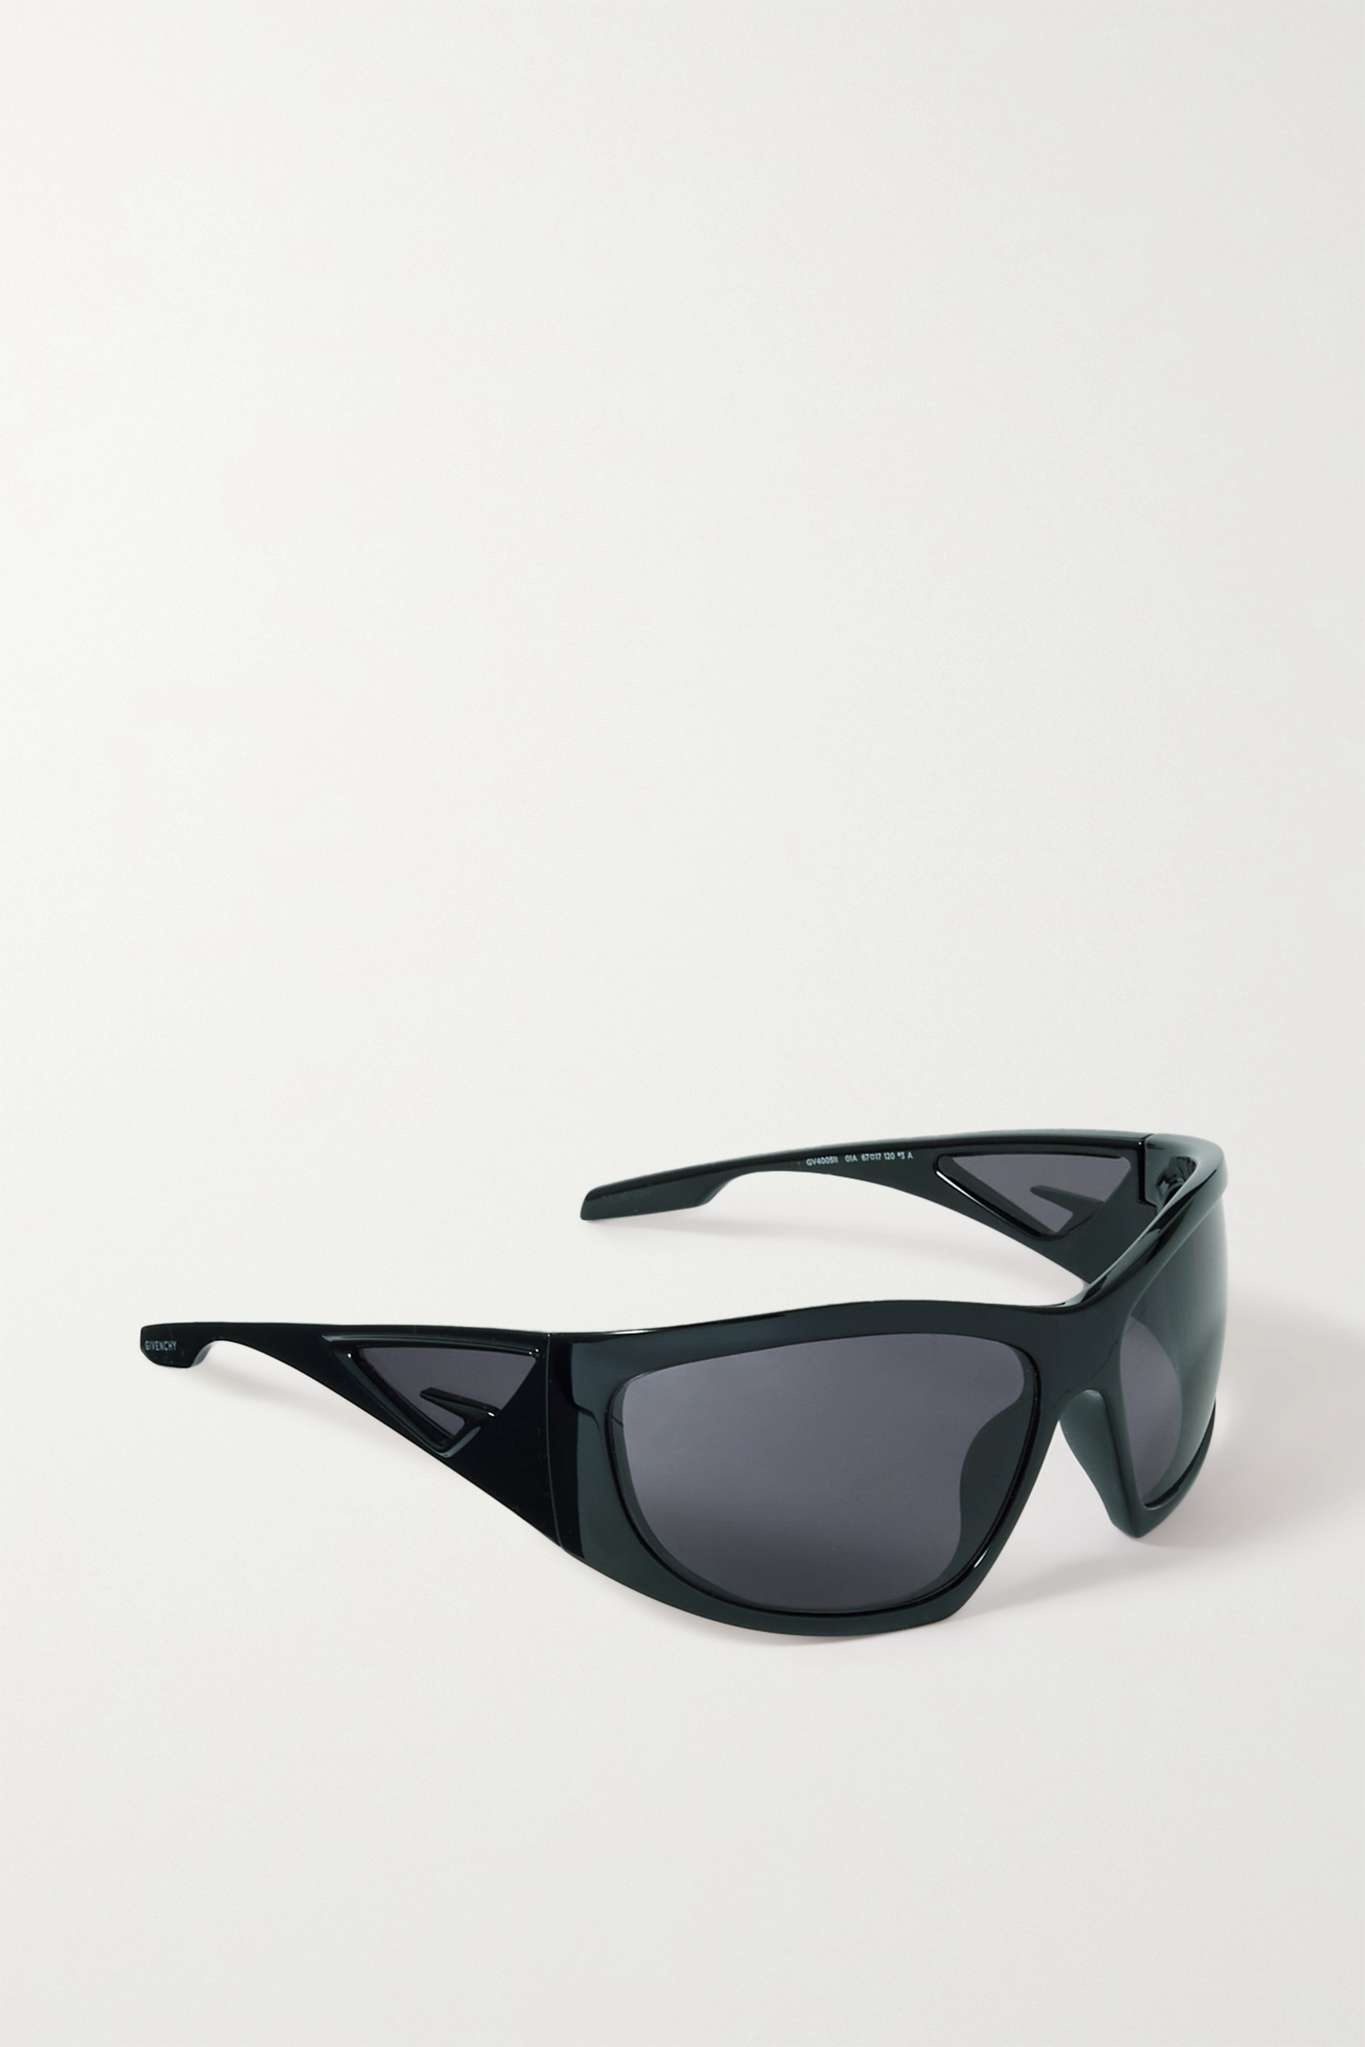 Giv Cut oversized D-frame nylon sunglasses - 3